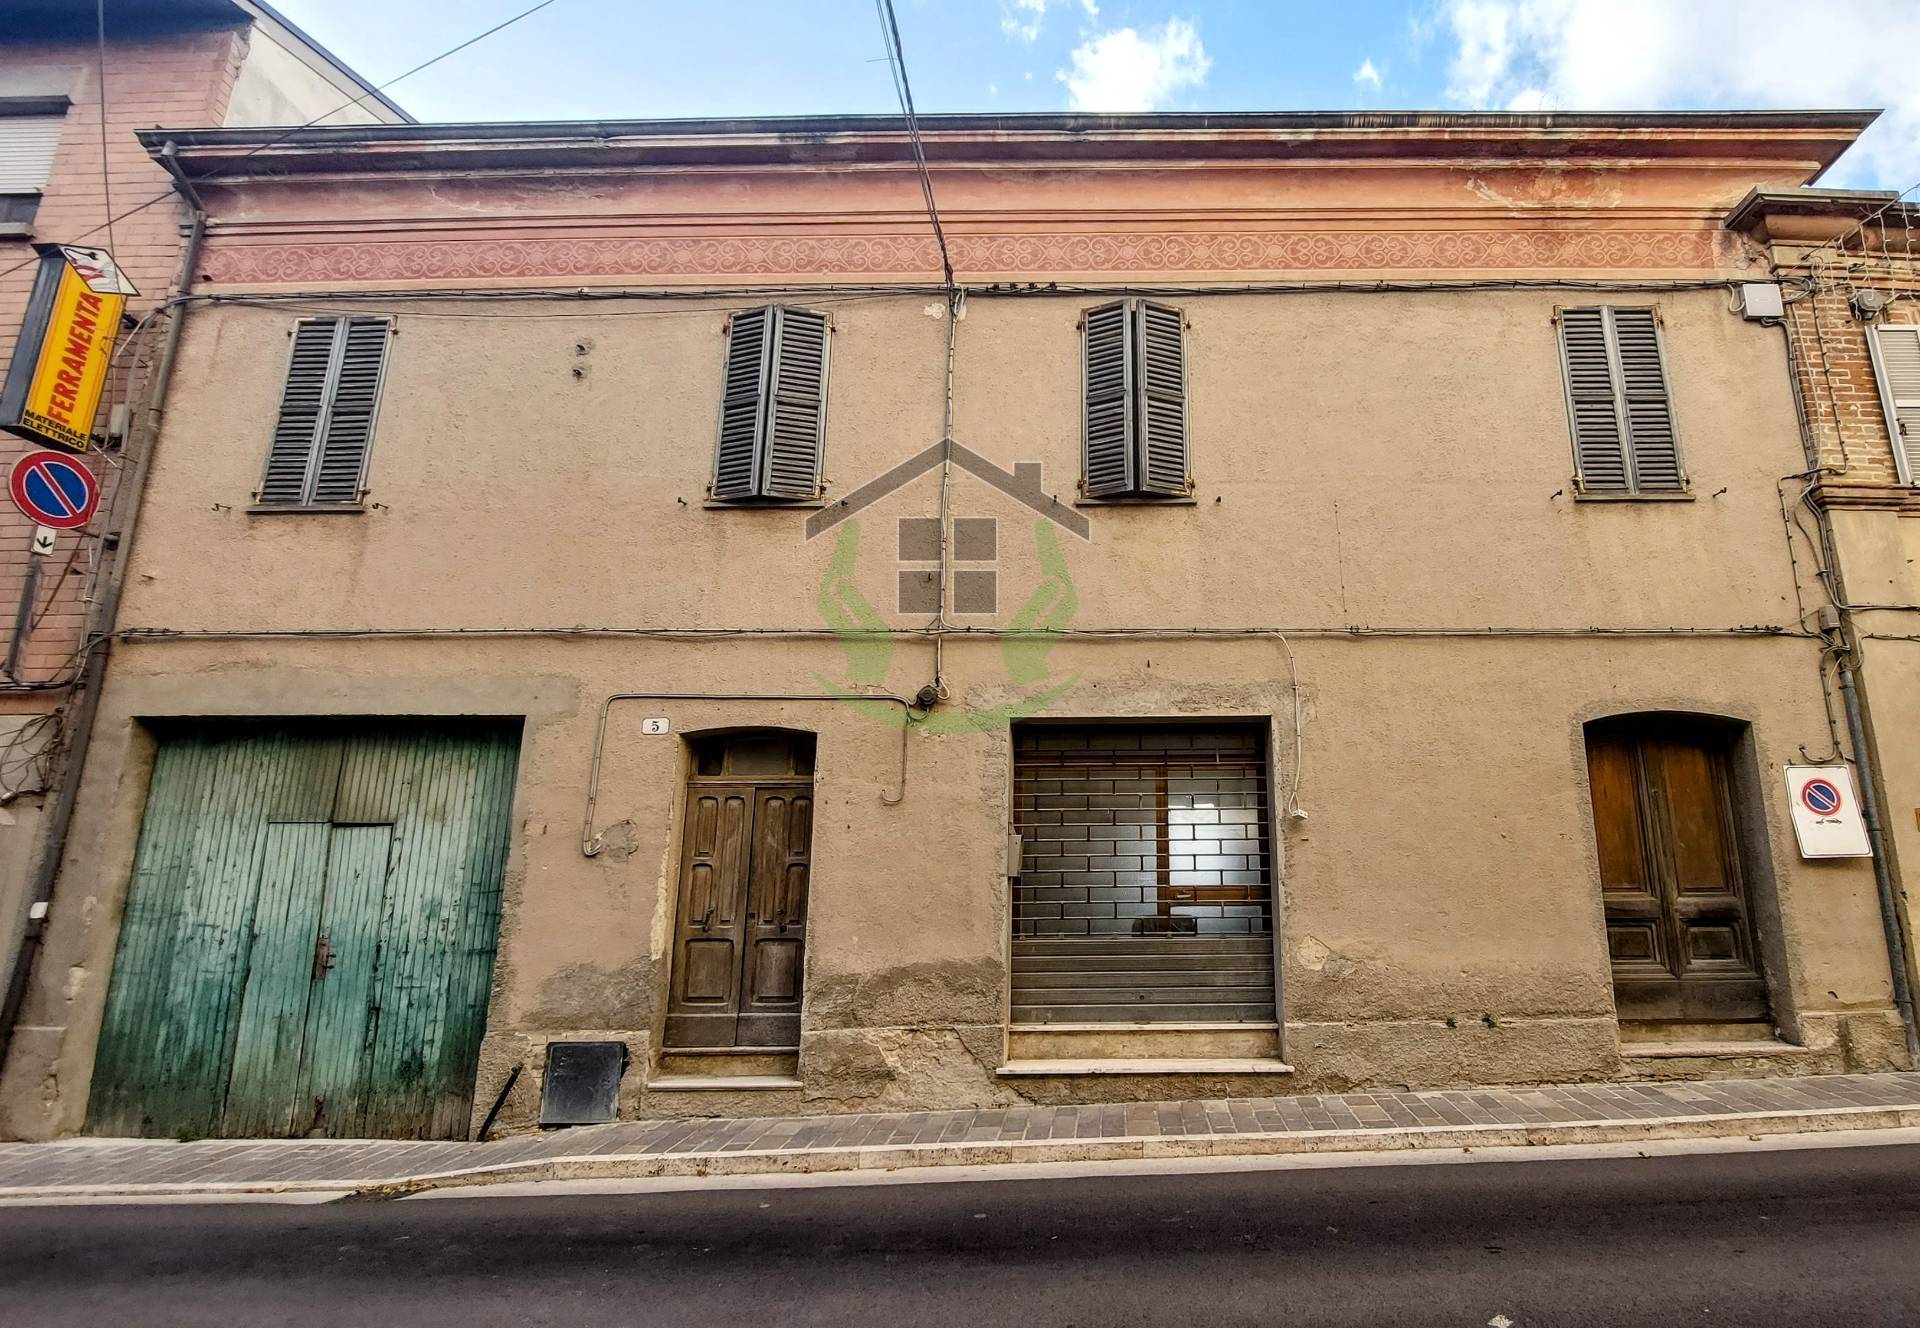 Palazzo / Stabile in vendita a Montalto delle Marche, 12 locali, prezzo € 70.000 | PortaleAgenzieImmobiliari.it